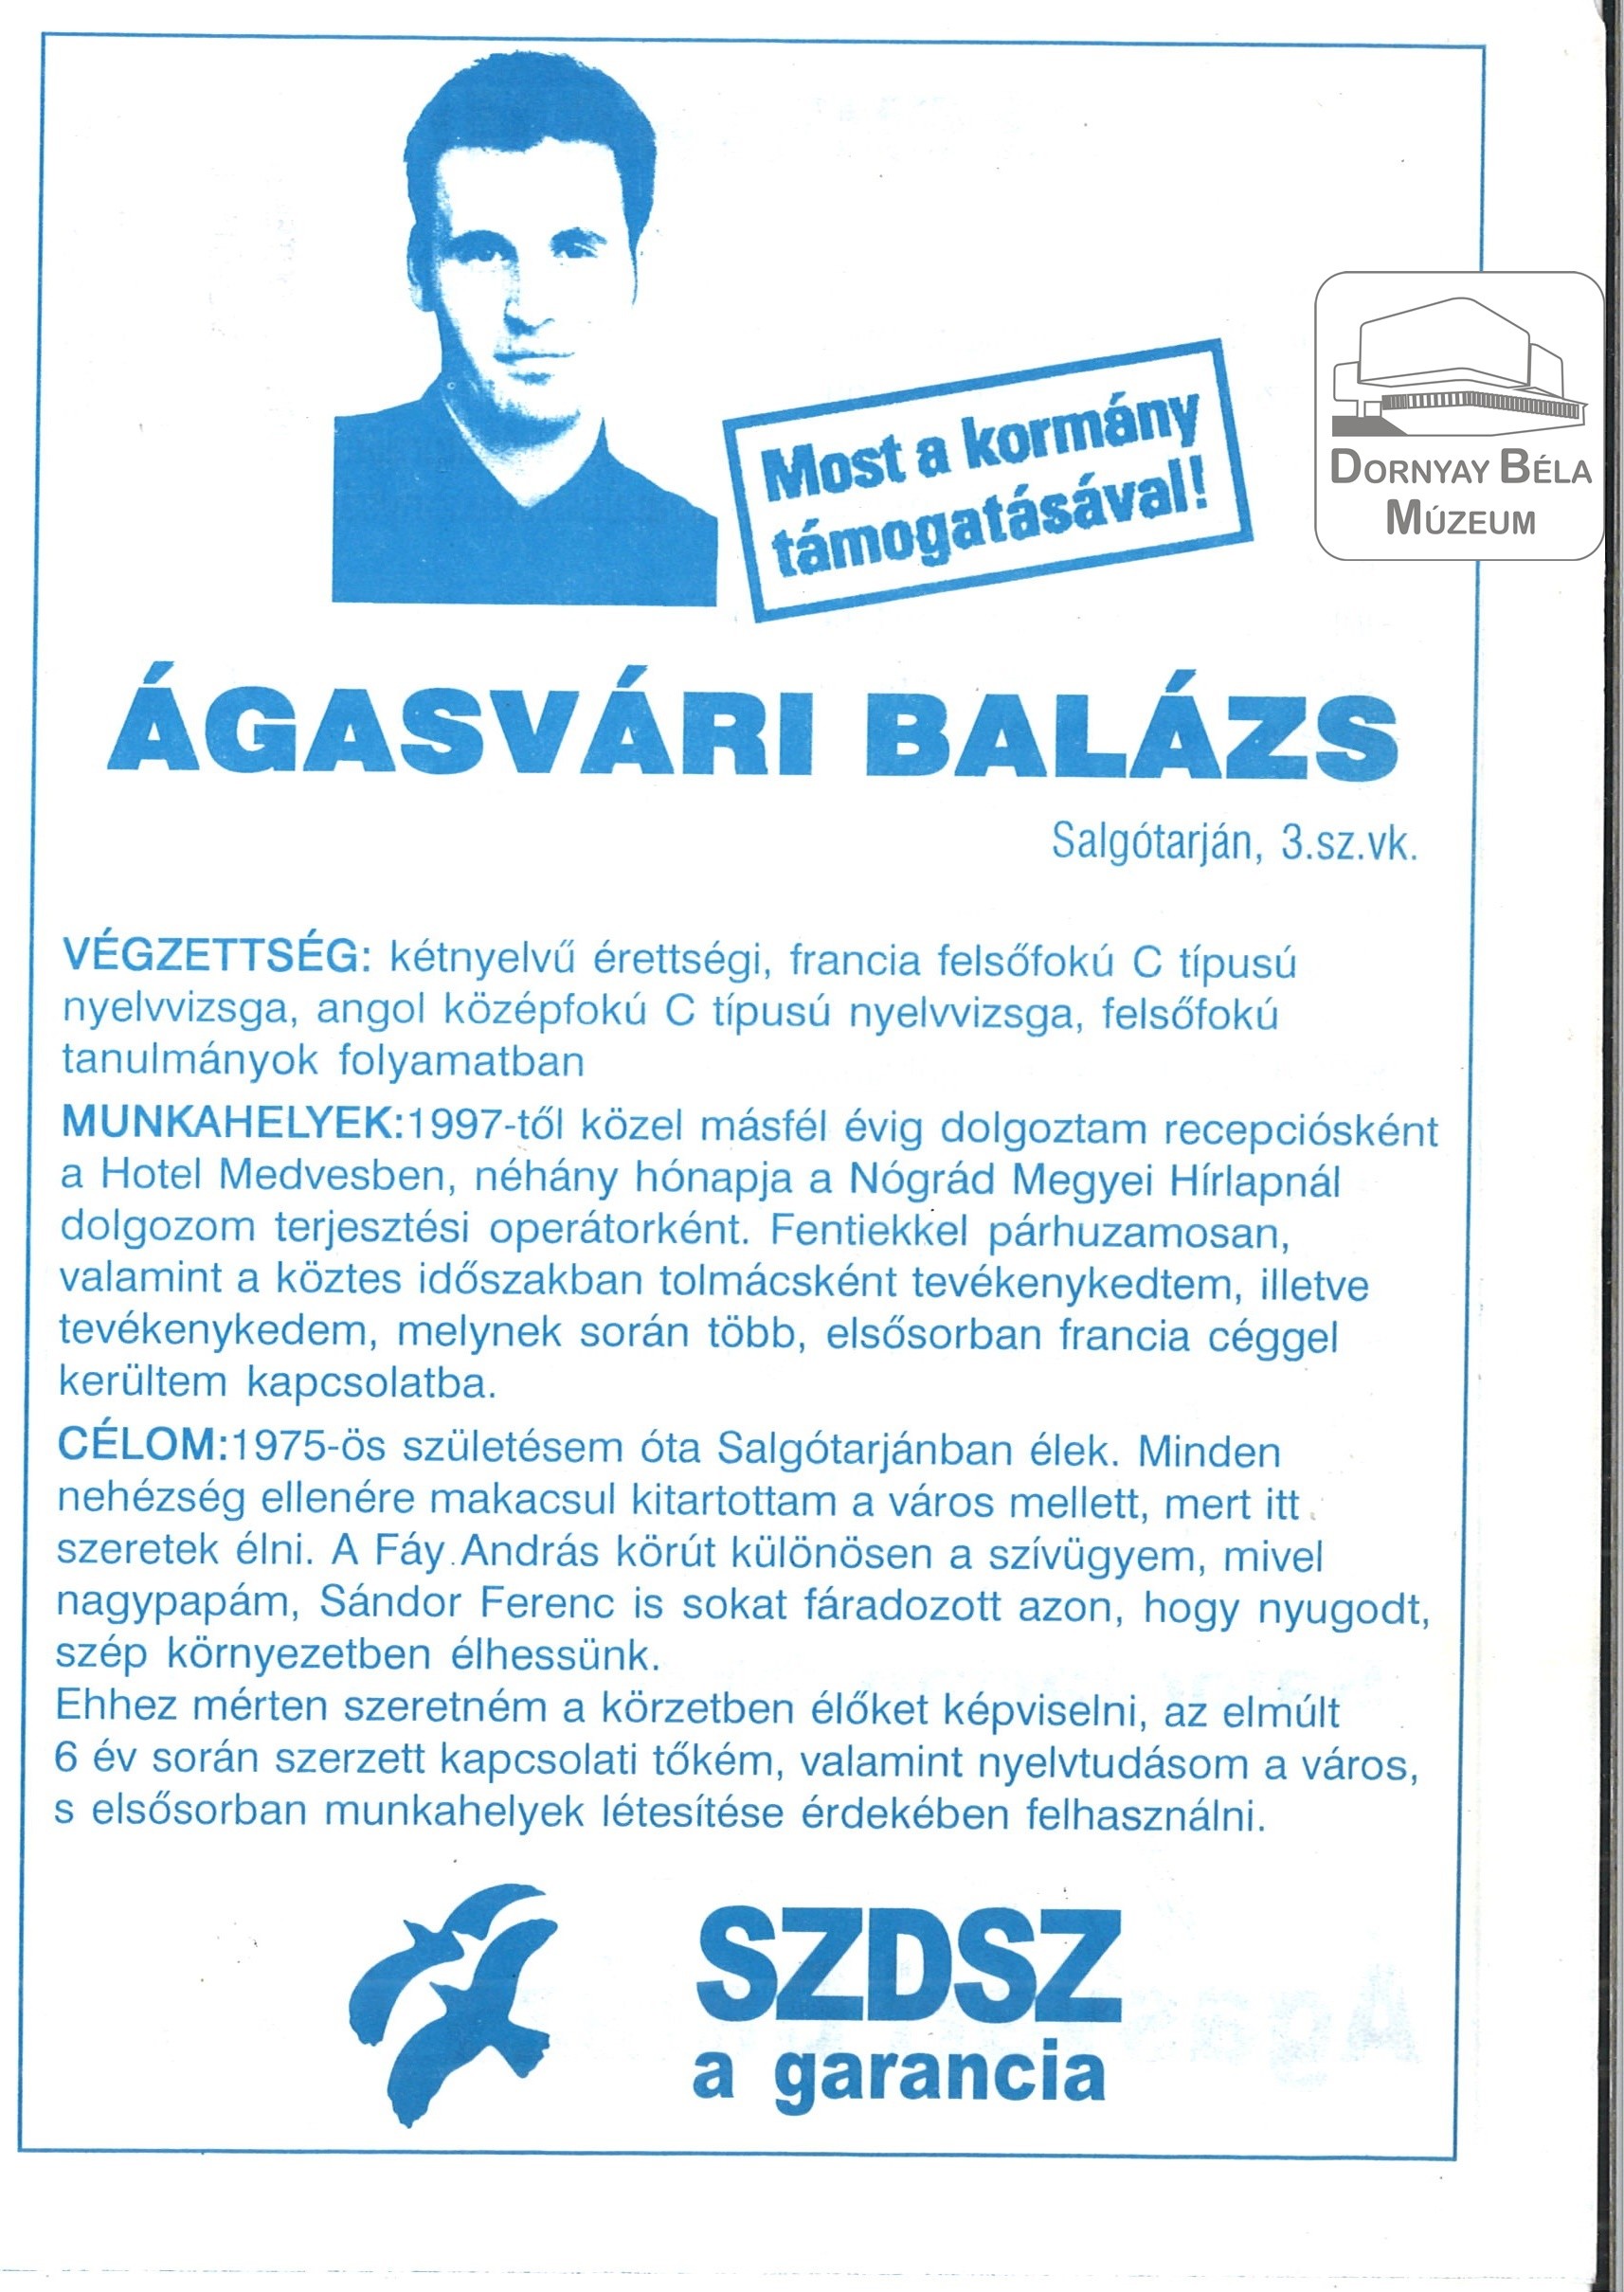 SZDSZ – Ágasvári Balázs választási röplapja (Dornyay Béla Múzeum, Salgótarján CC BY-NC-SA)